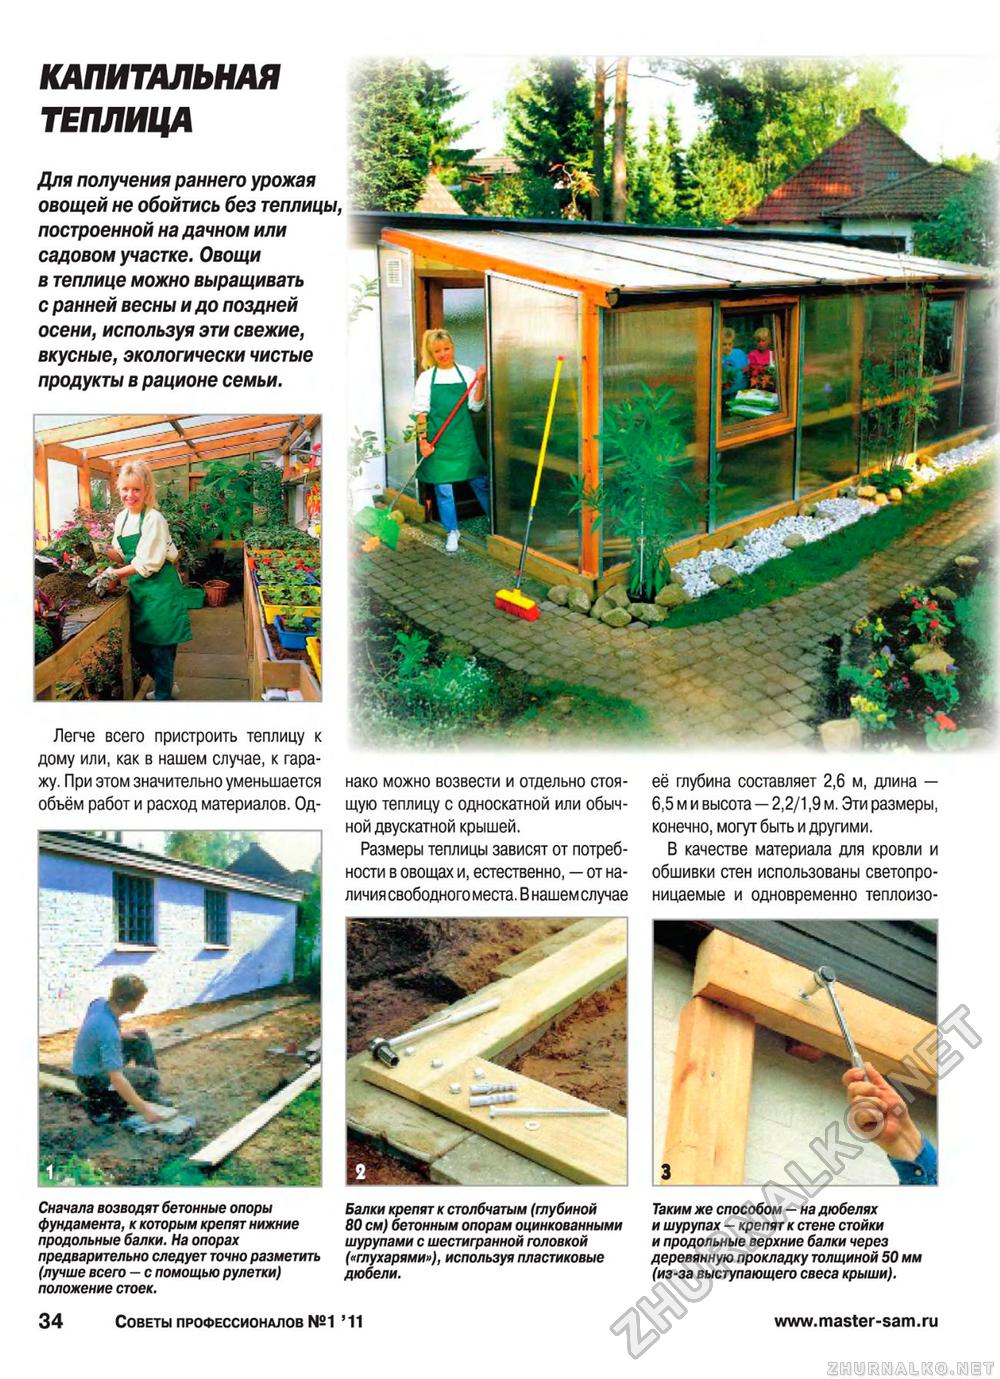 Советы профессионалов 2011-01, страница 34